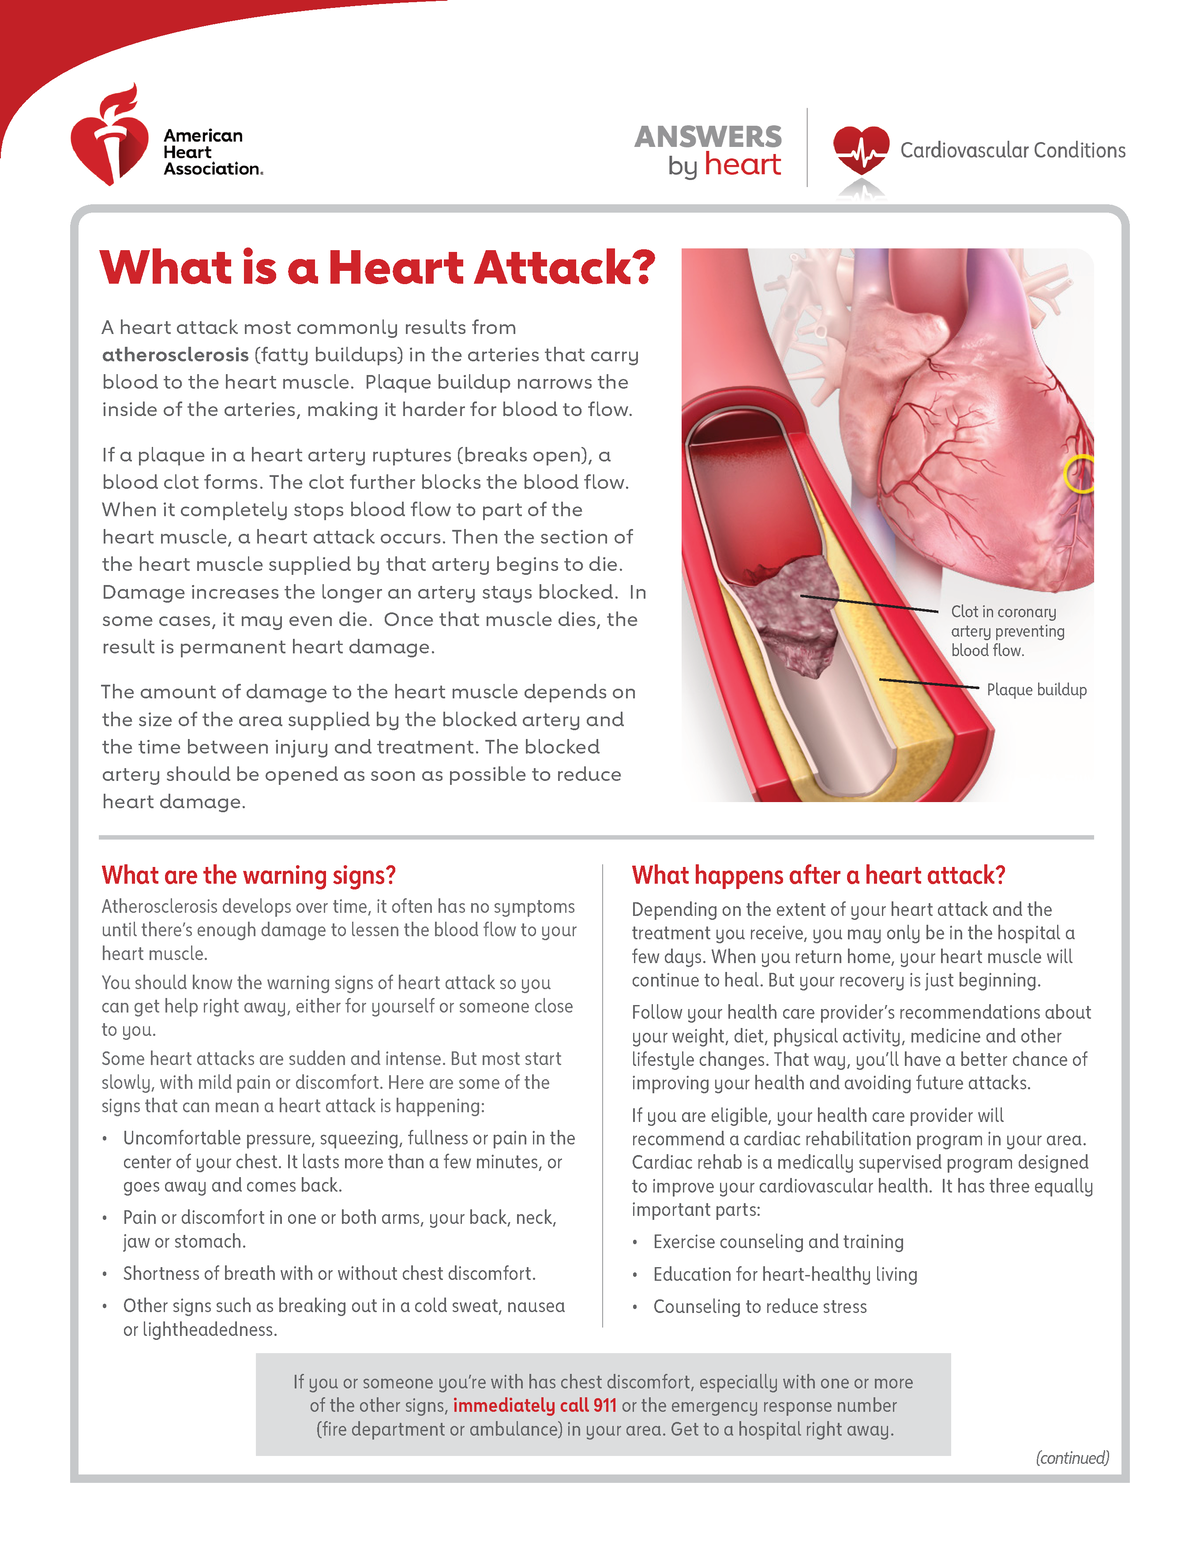 essay on heart attack